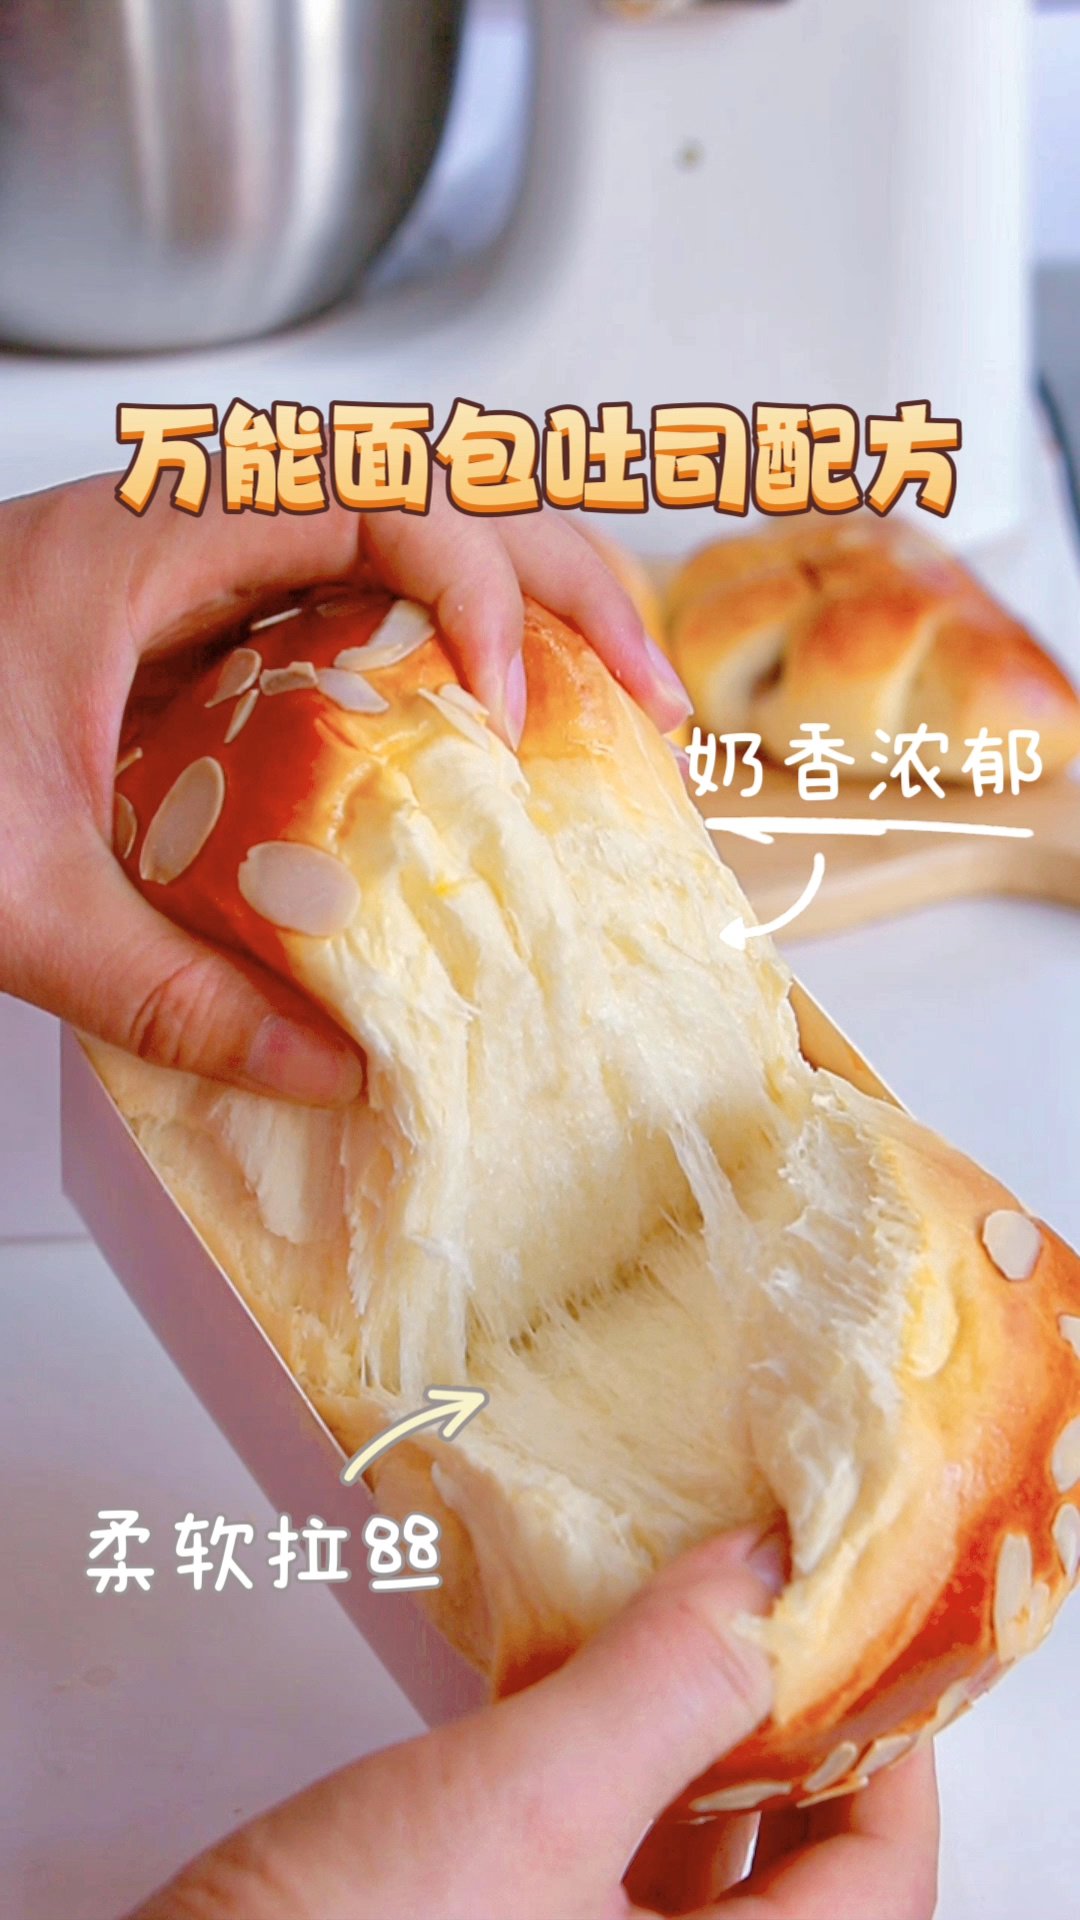 吐司面包的封面